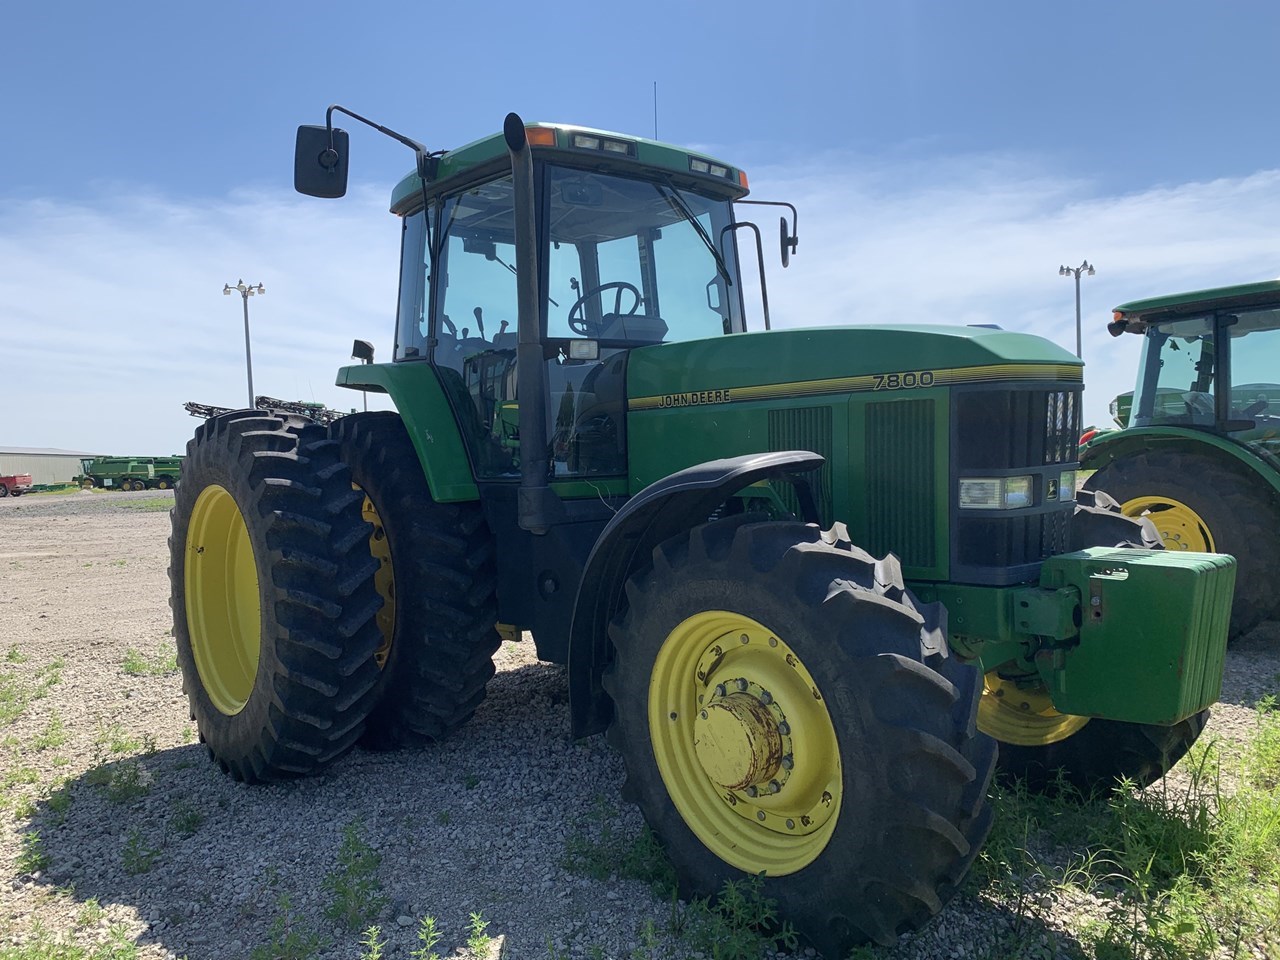 1993 John Deere 7800 Tractor Row Crop For Sale In Pender Nebraska 6010